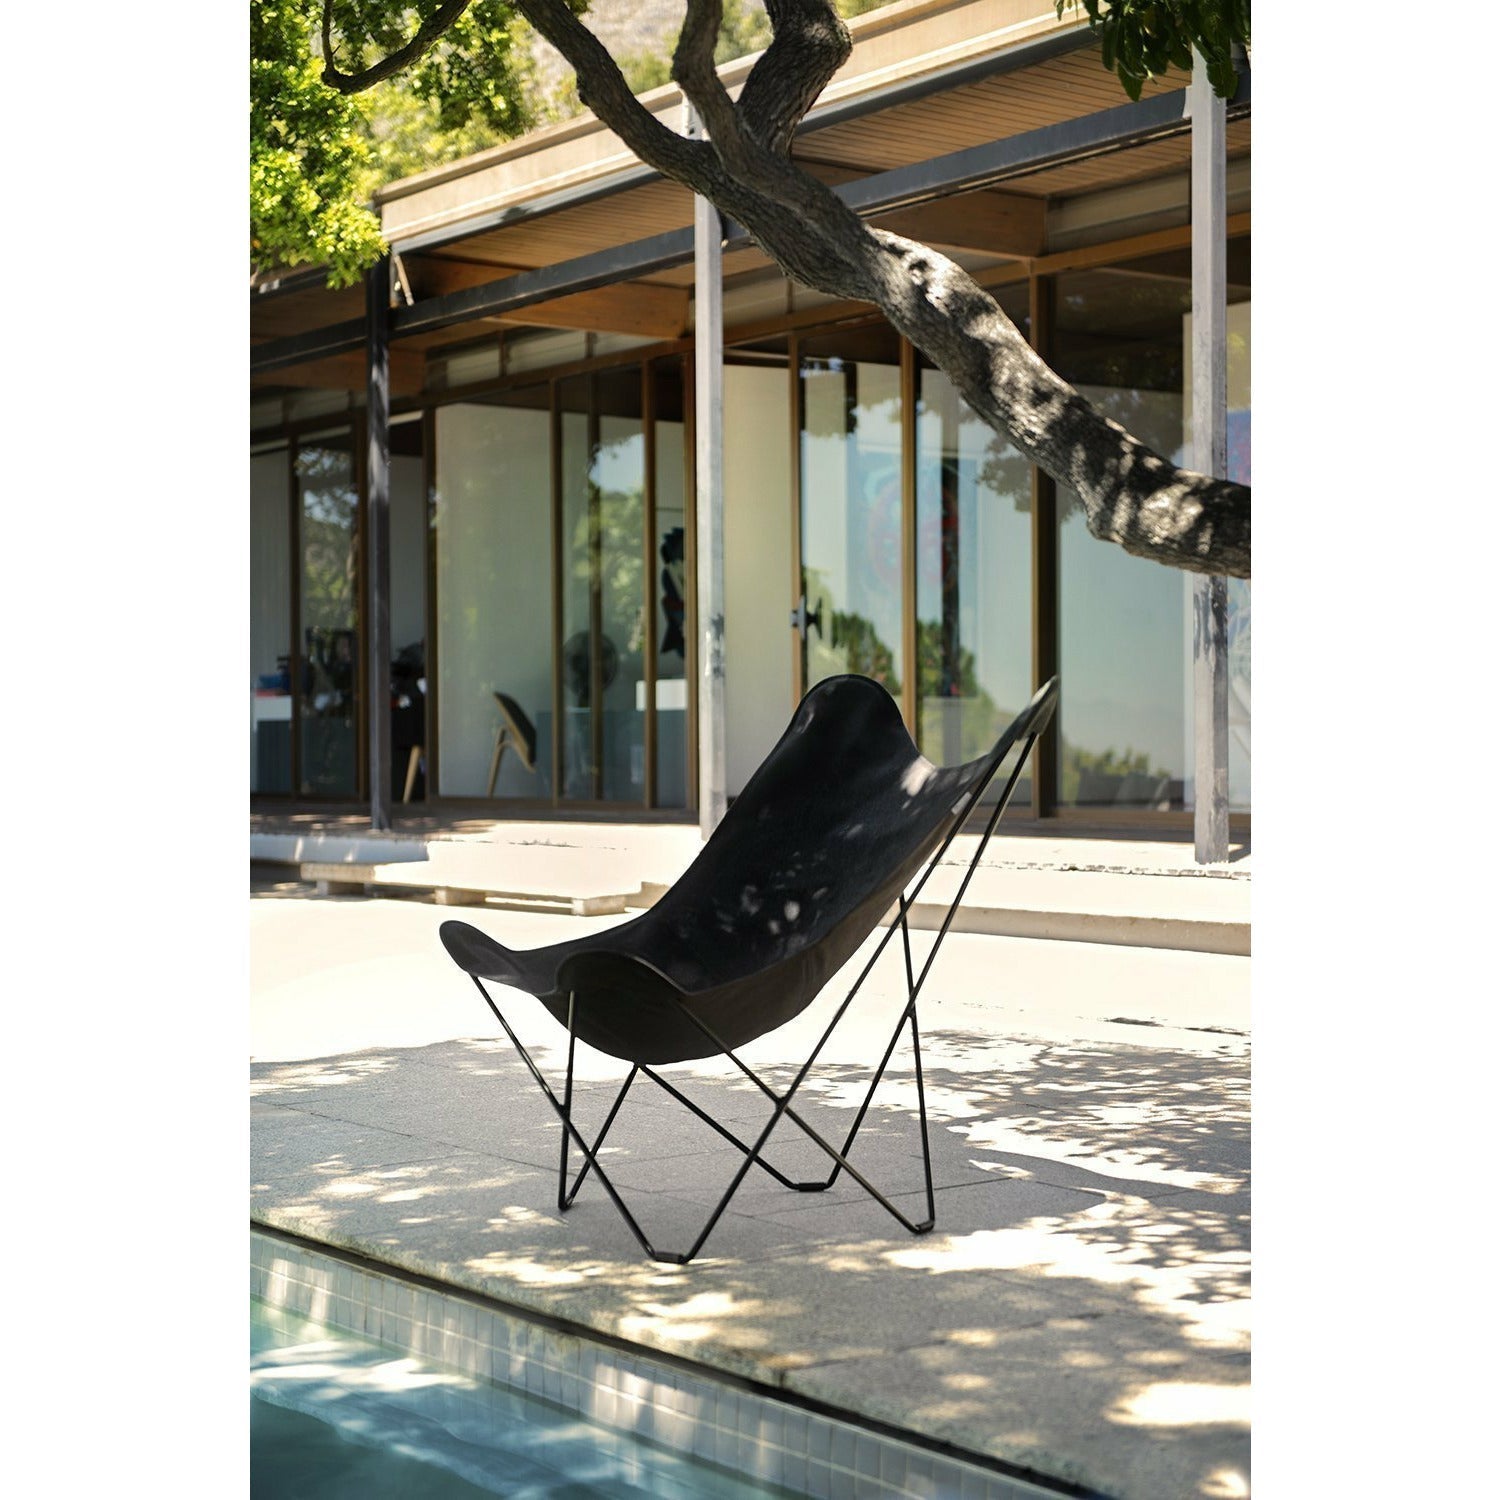 Cuero Sunshine Mariposa Butterfly Chair, charbon de bois / cadre extérieur noir